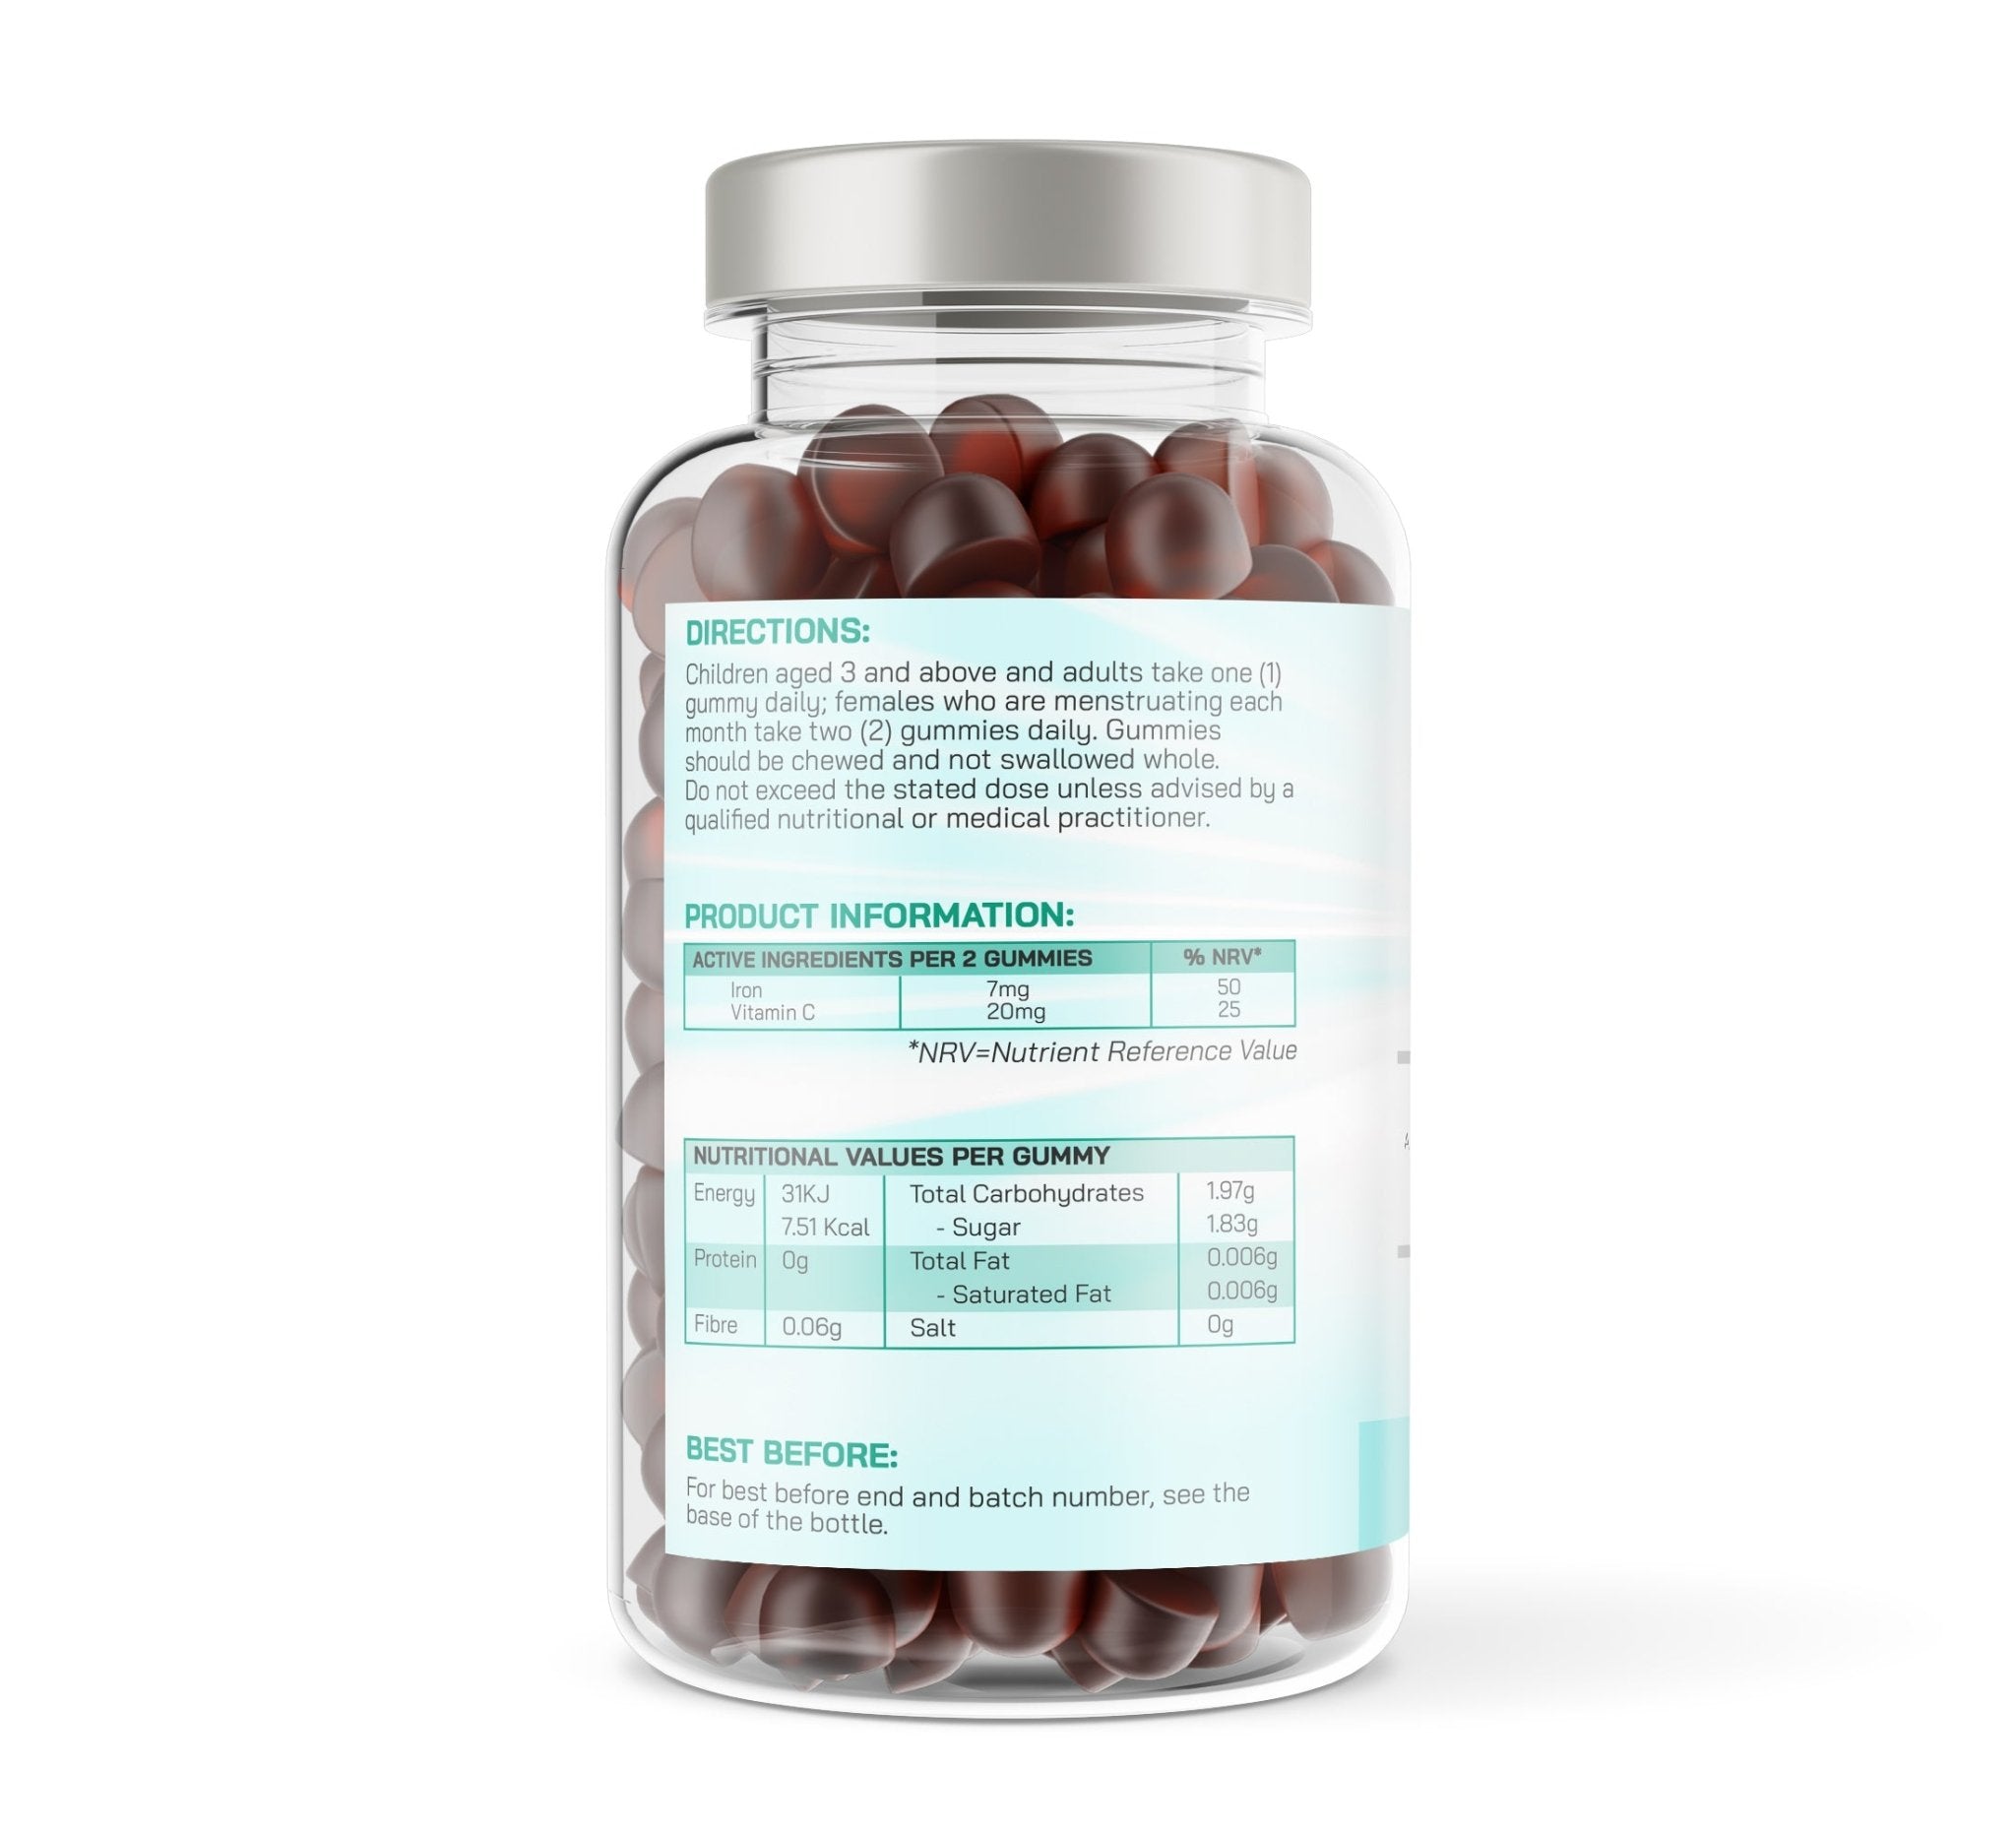 Just Flex Iron & Vitamin C - 60 Natural Cherry Flavour Gummies - Just Flex